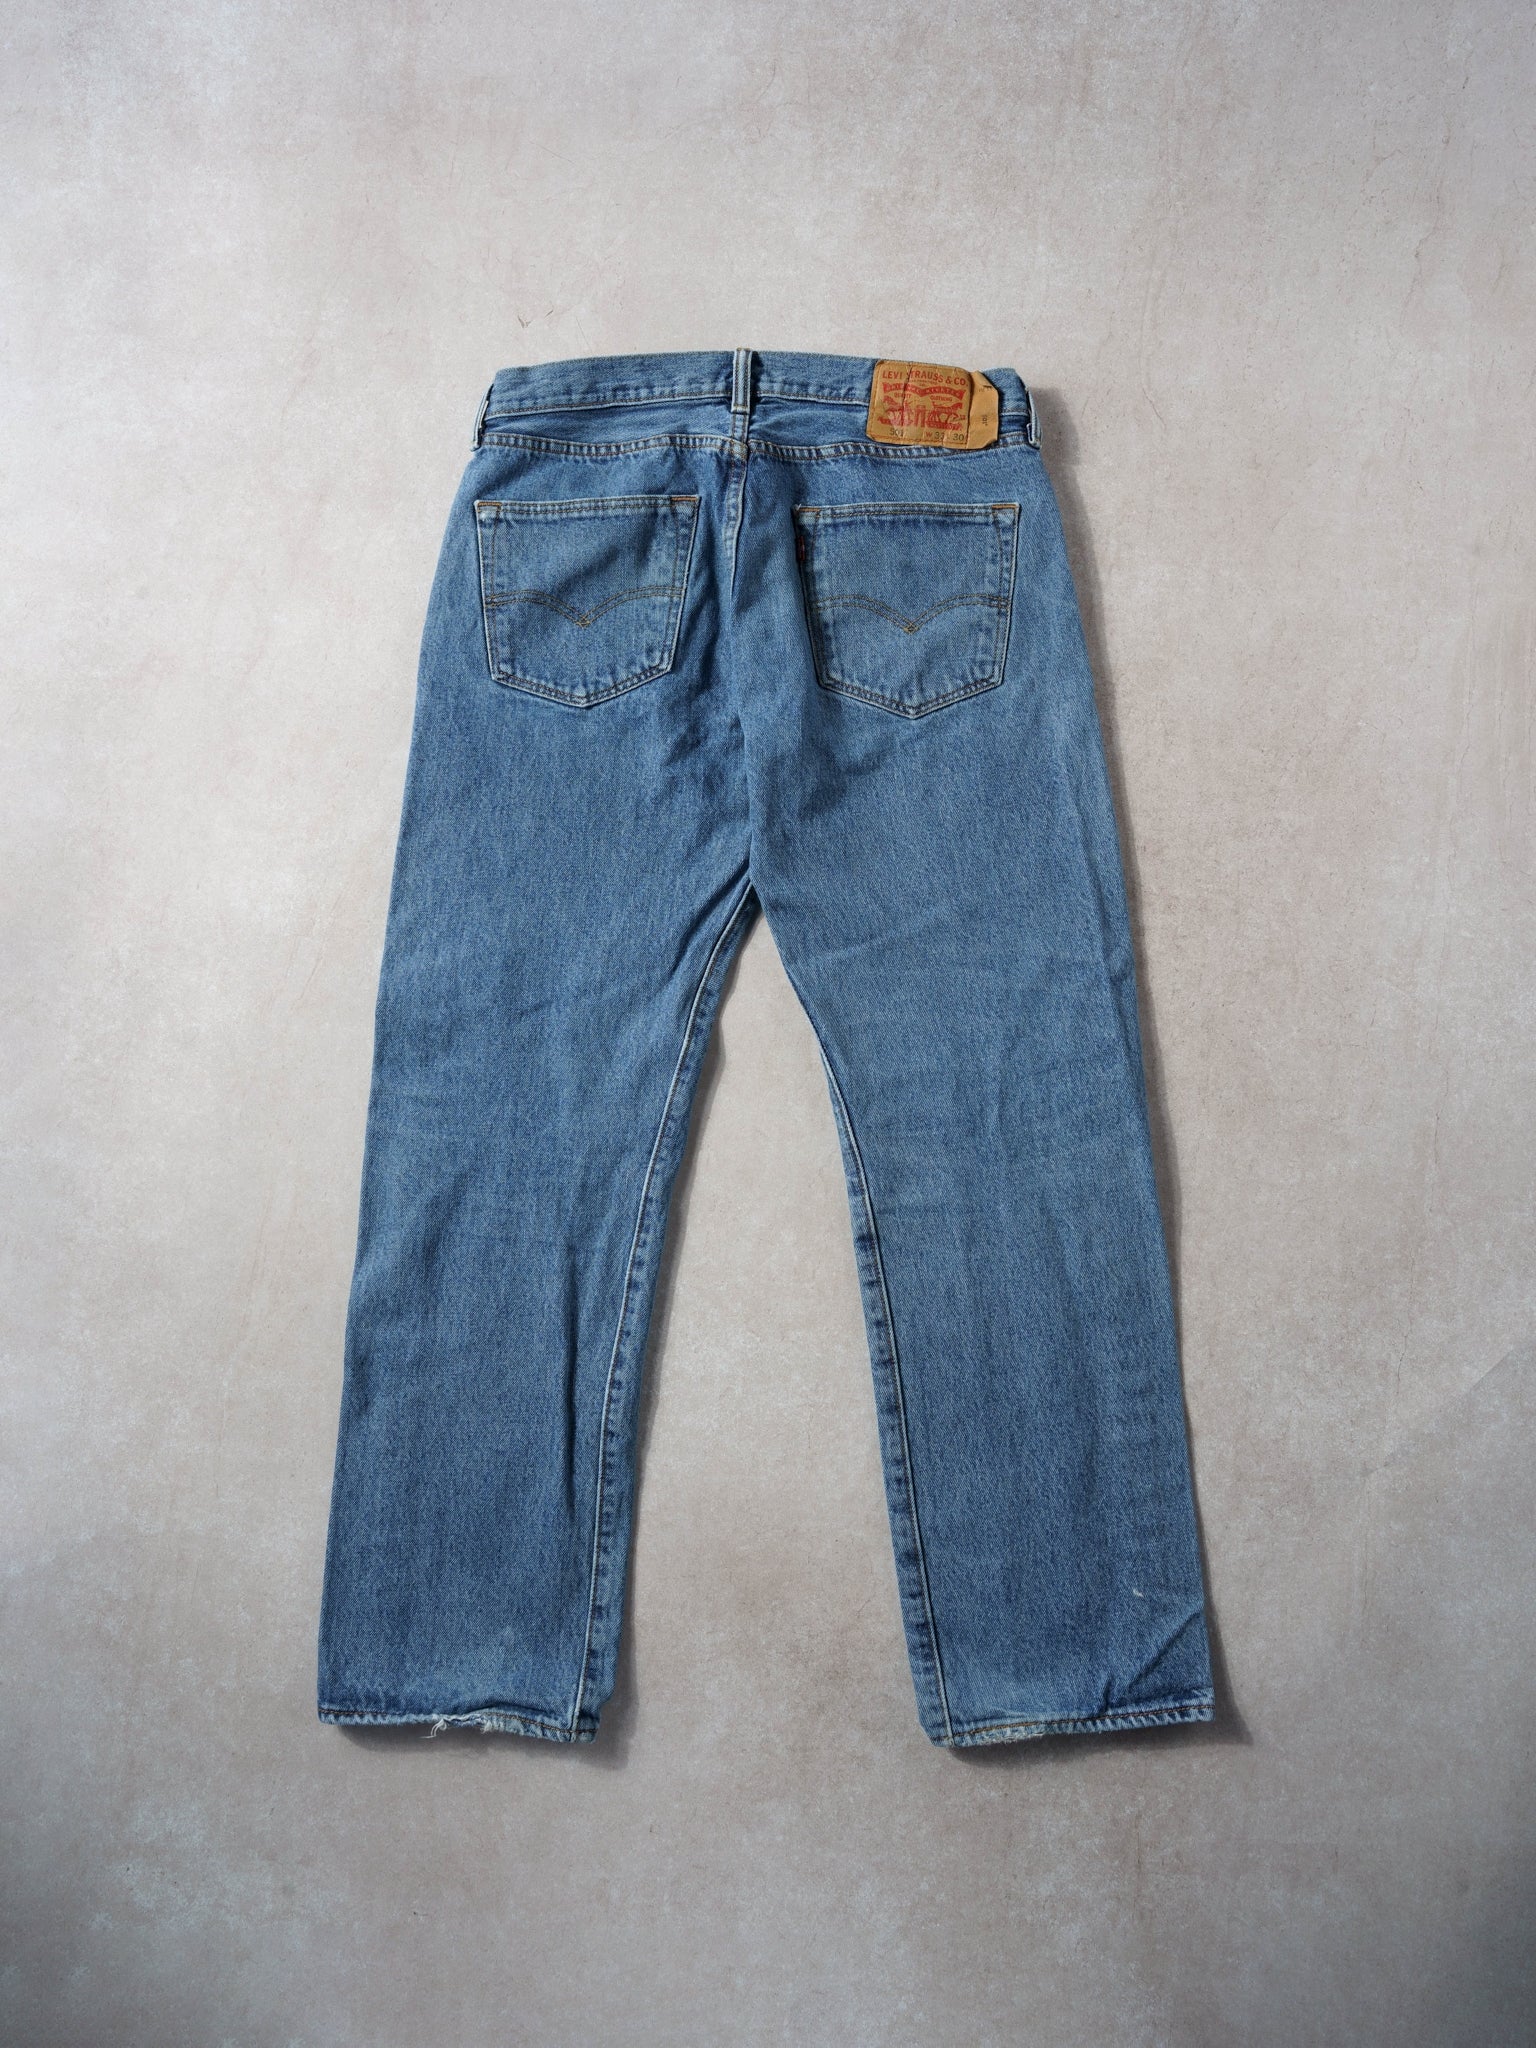 Vintage 90s Blue Levi's 501 Denim Jeans (32x29)